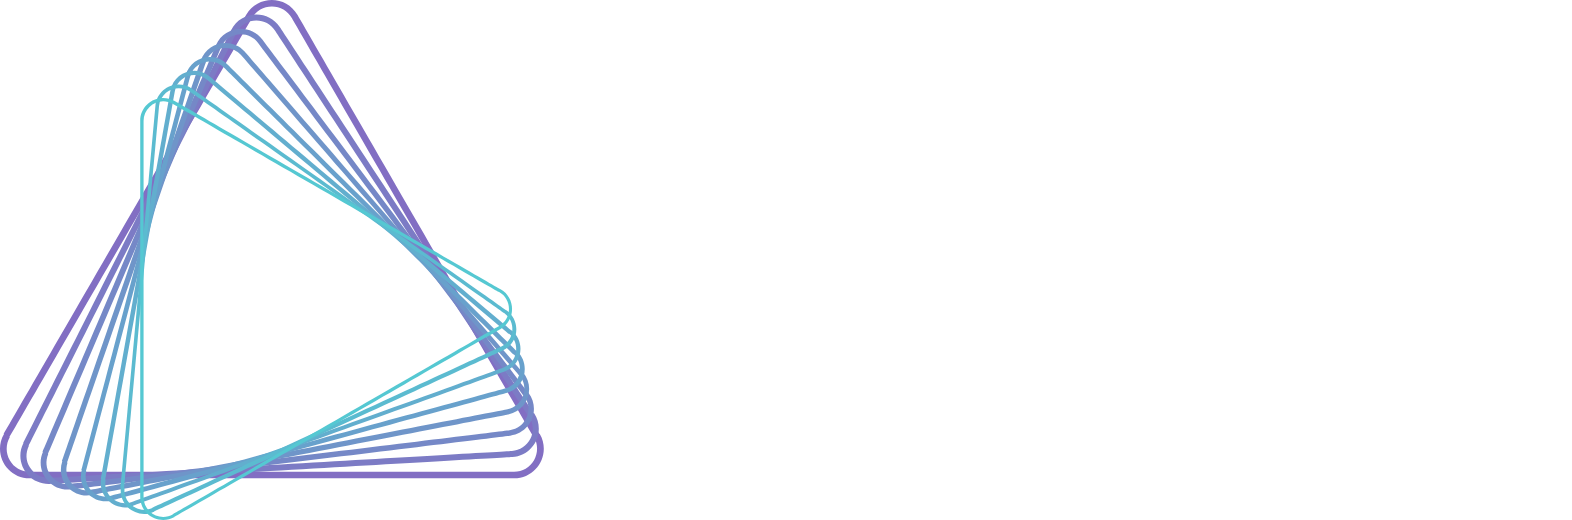 Azenta Logo groß für dunkle Hintergründe (transparentes PNG)